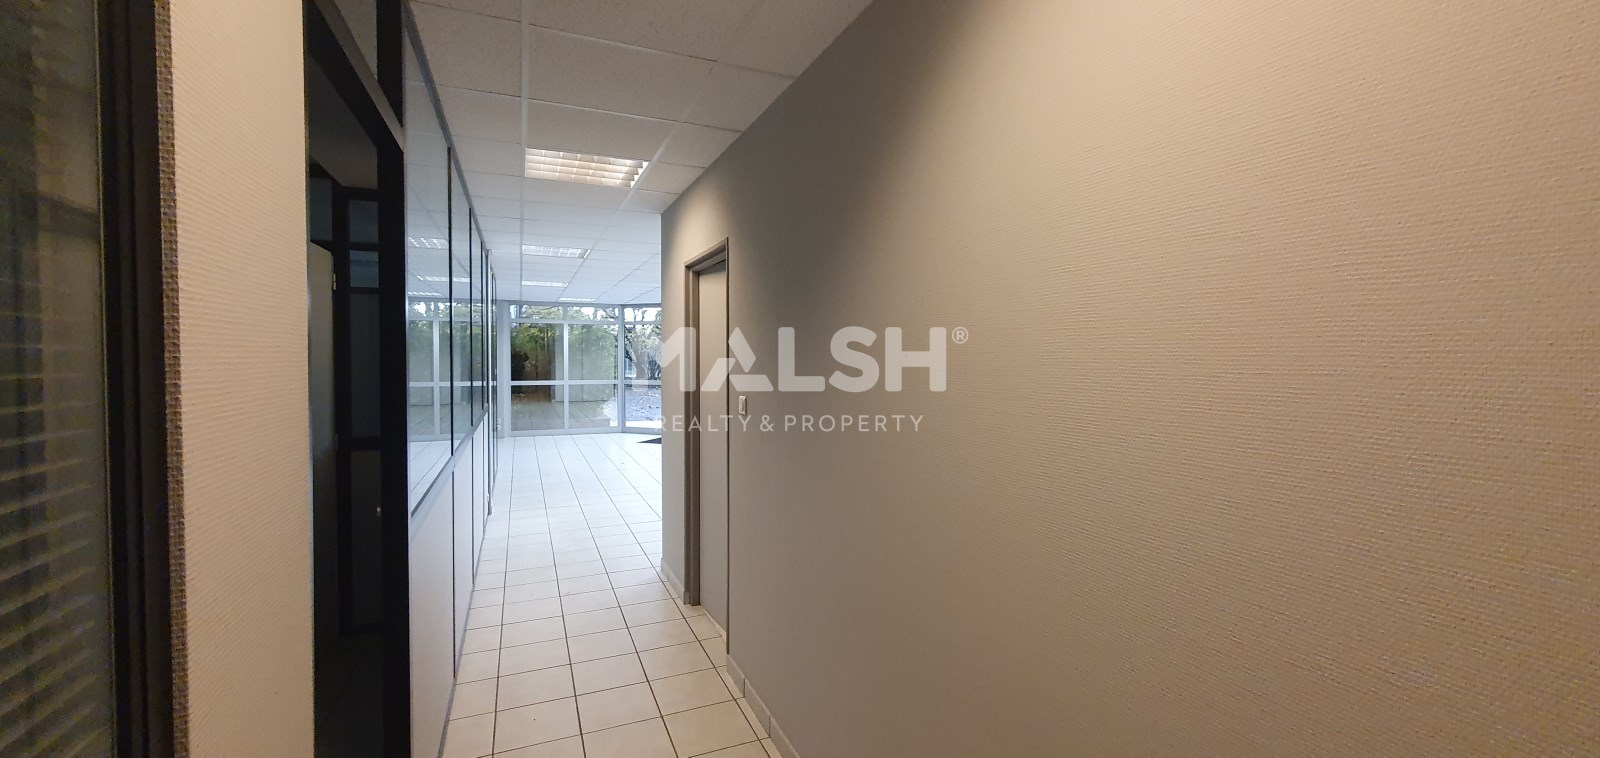 MALSH Realty & Property - Activité - Extérieurs NORD (Villefranche / Belleville) - Péronnas - 15